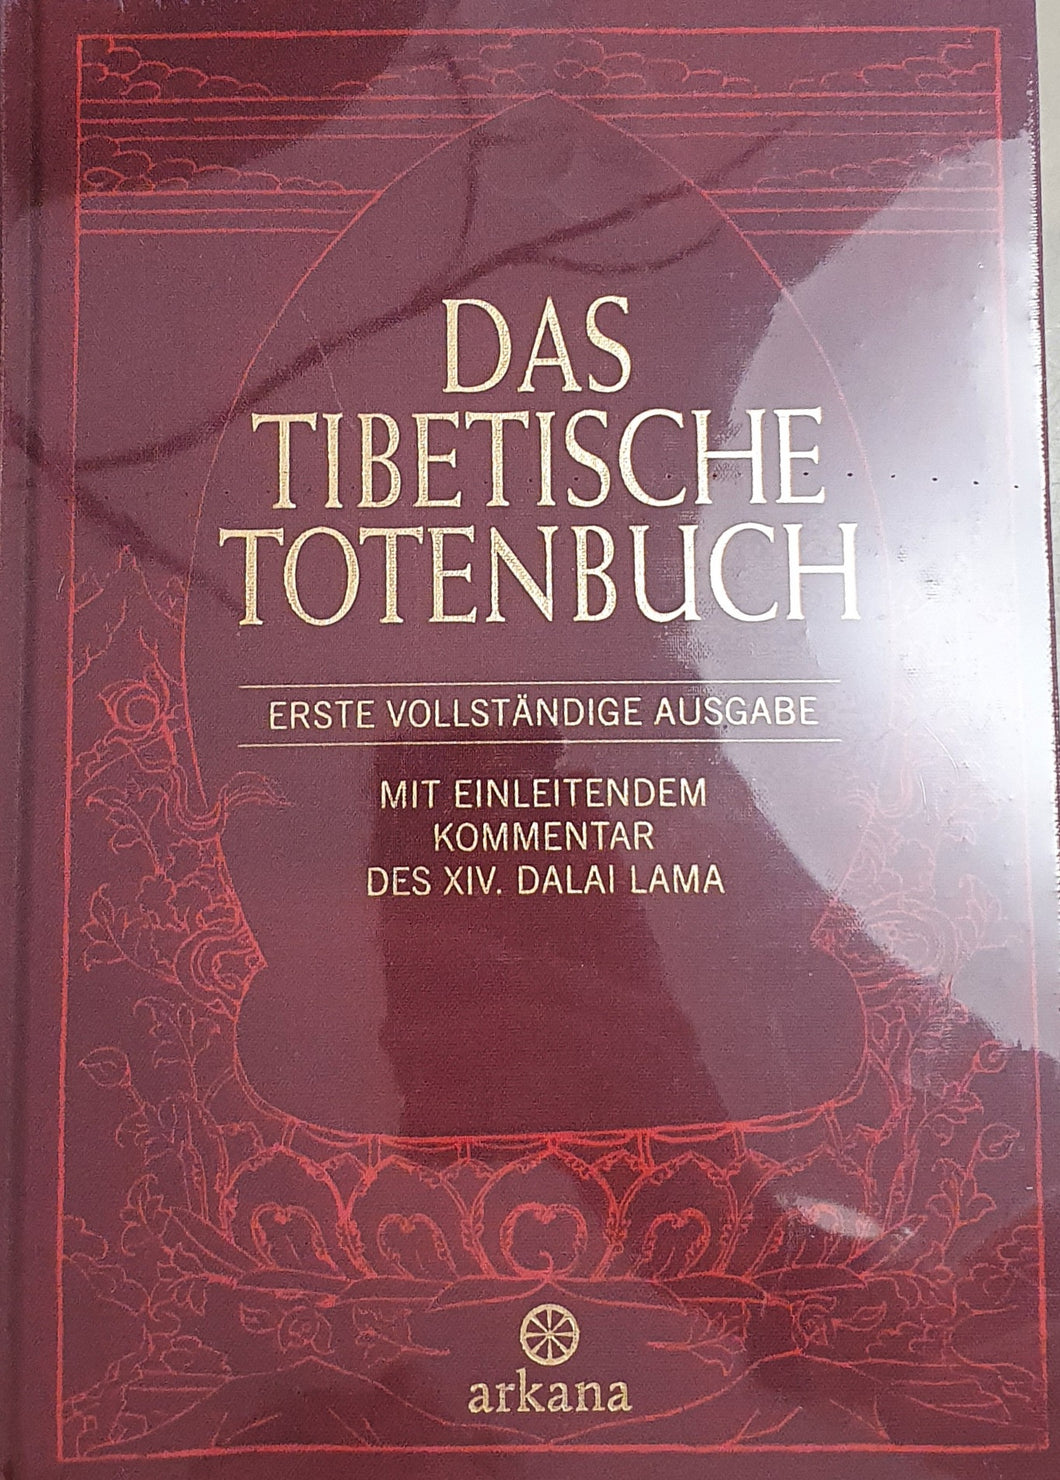 Das tibetische Totenbuch